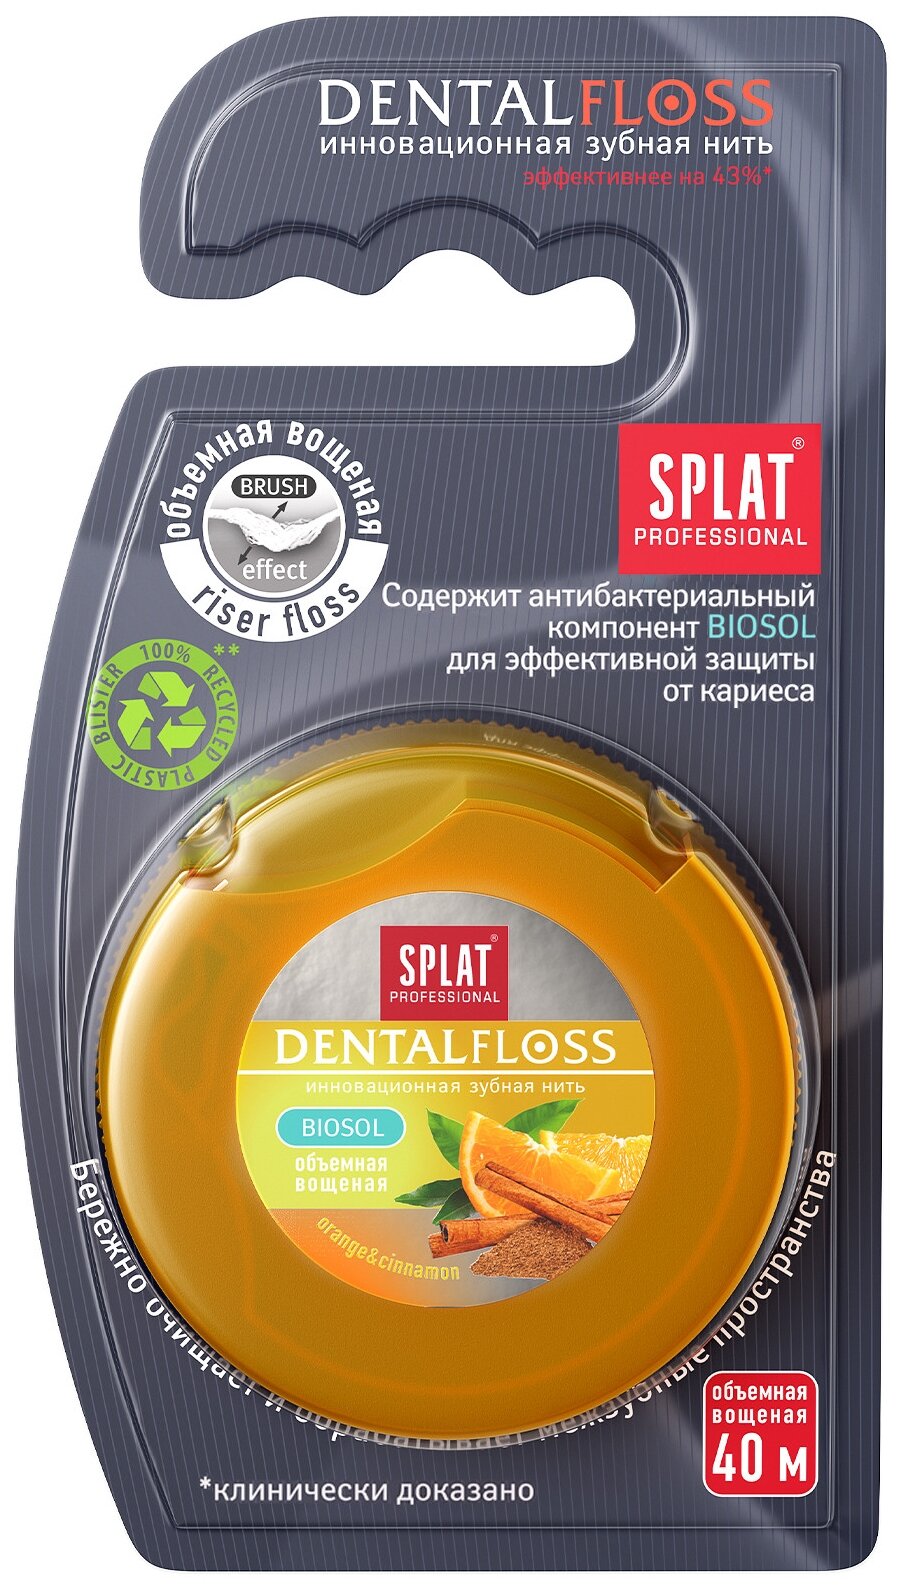 SPLAT зубная нить Dentalfloss (апельсин и корица), 50 г, апельсин, оранжевый